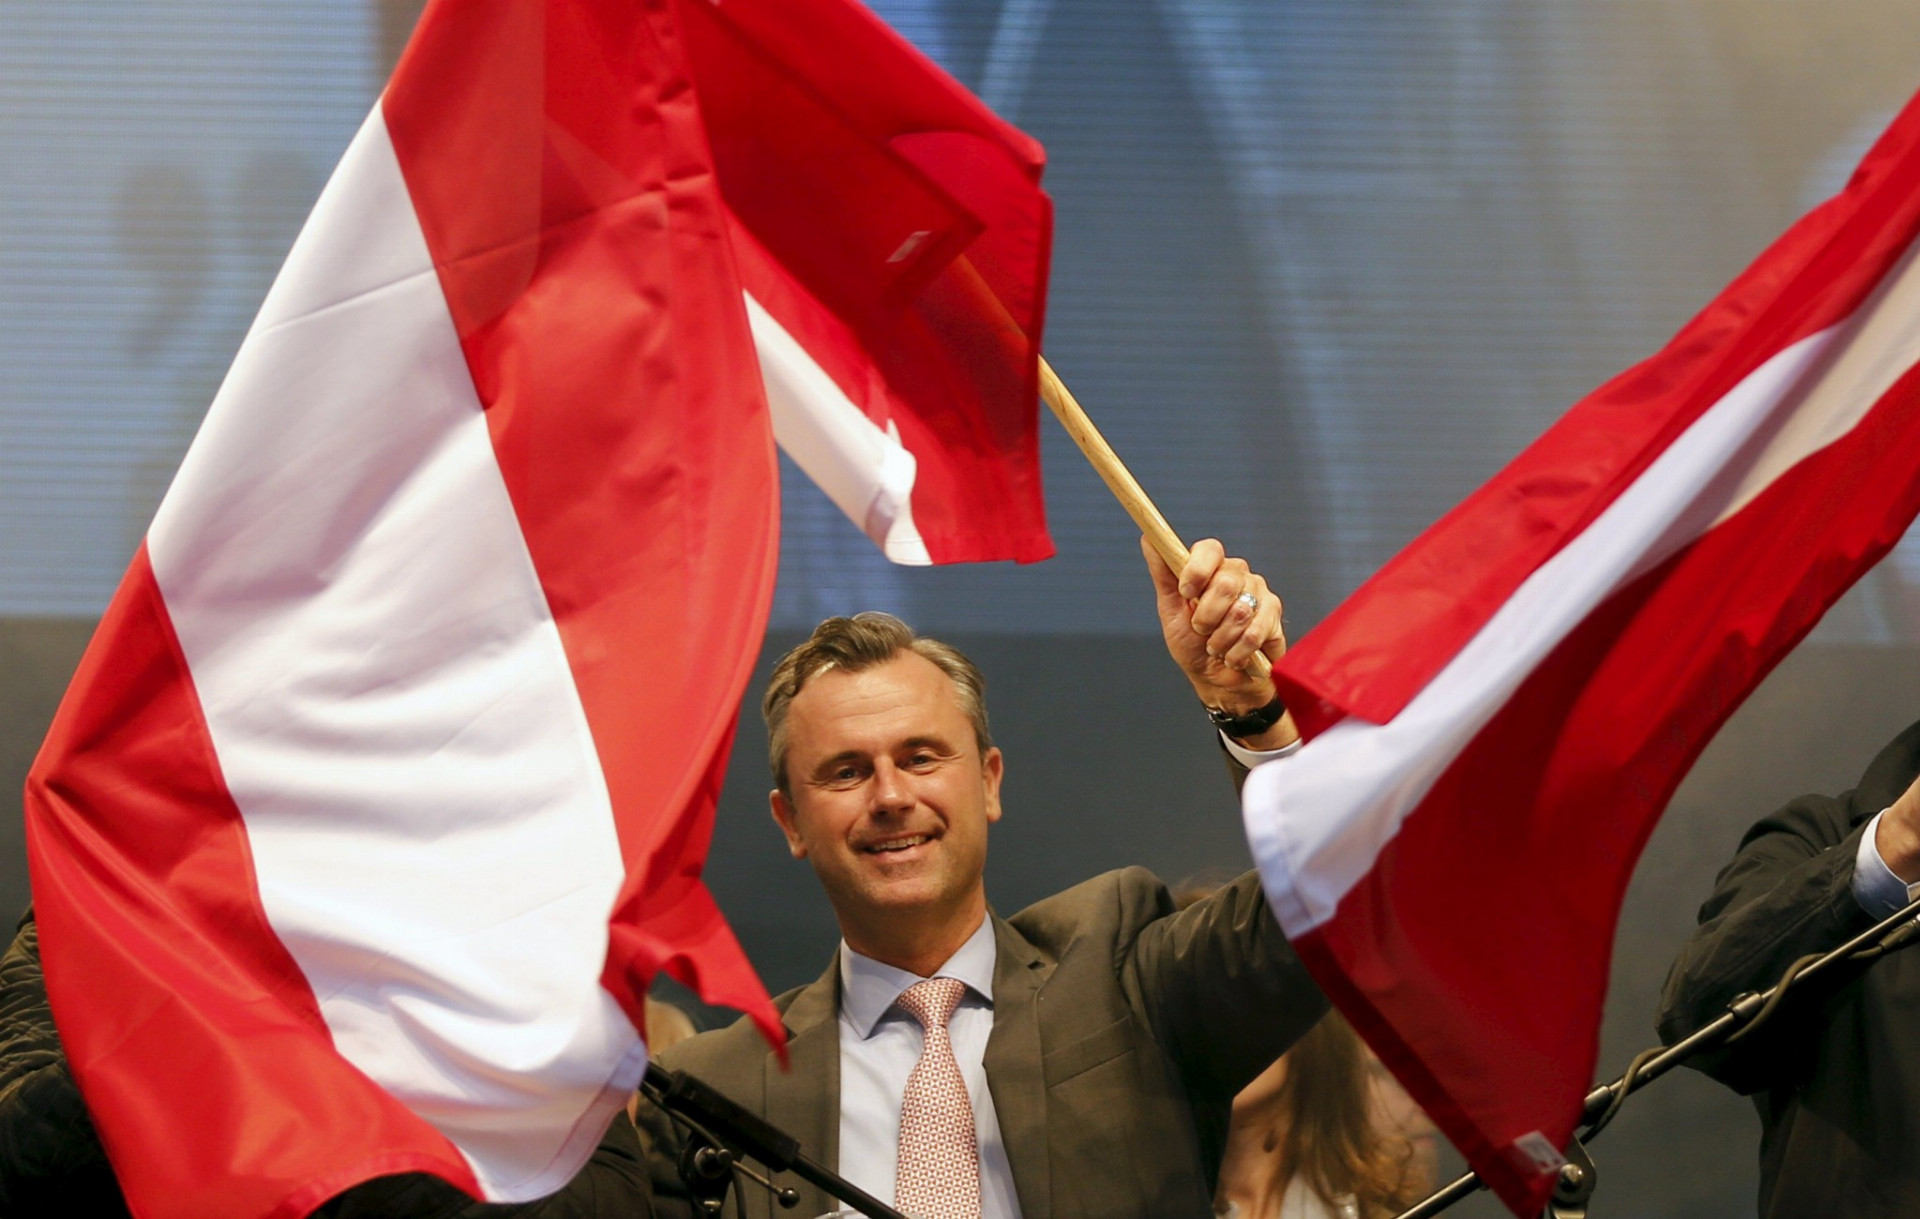 Víťaz prvého kola prezidentských volieb v Rakúsku, 45-ročný Norbert Hofer, reagoval na výsledky slovami, že je vďačný a plný pokory.